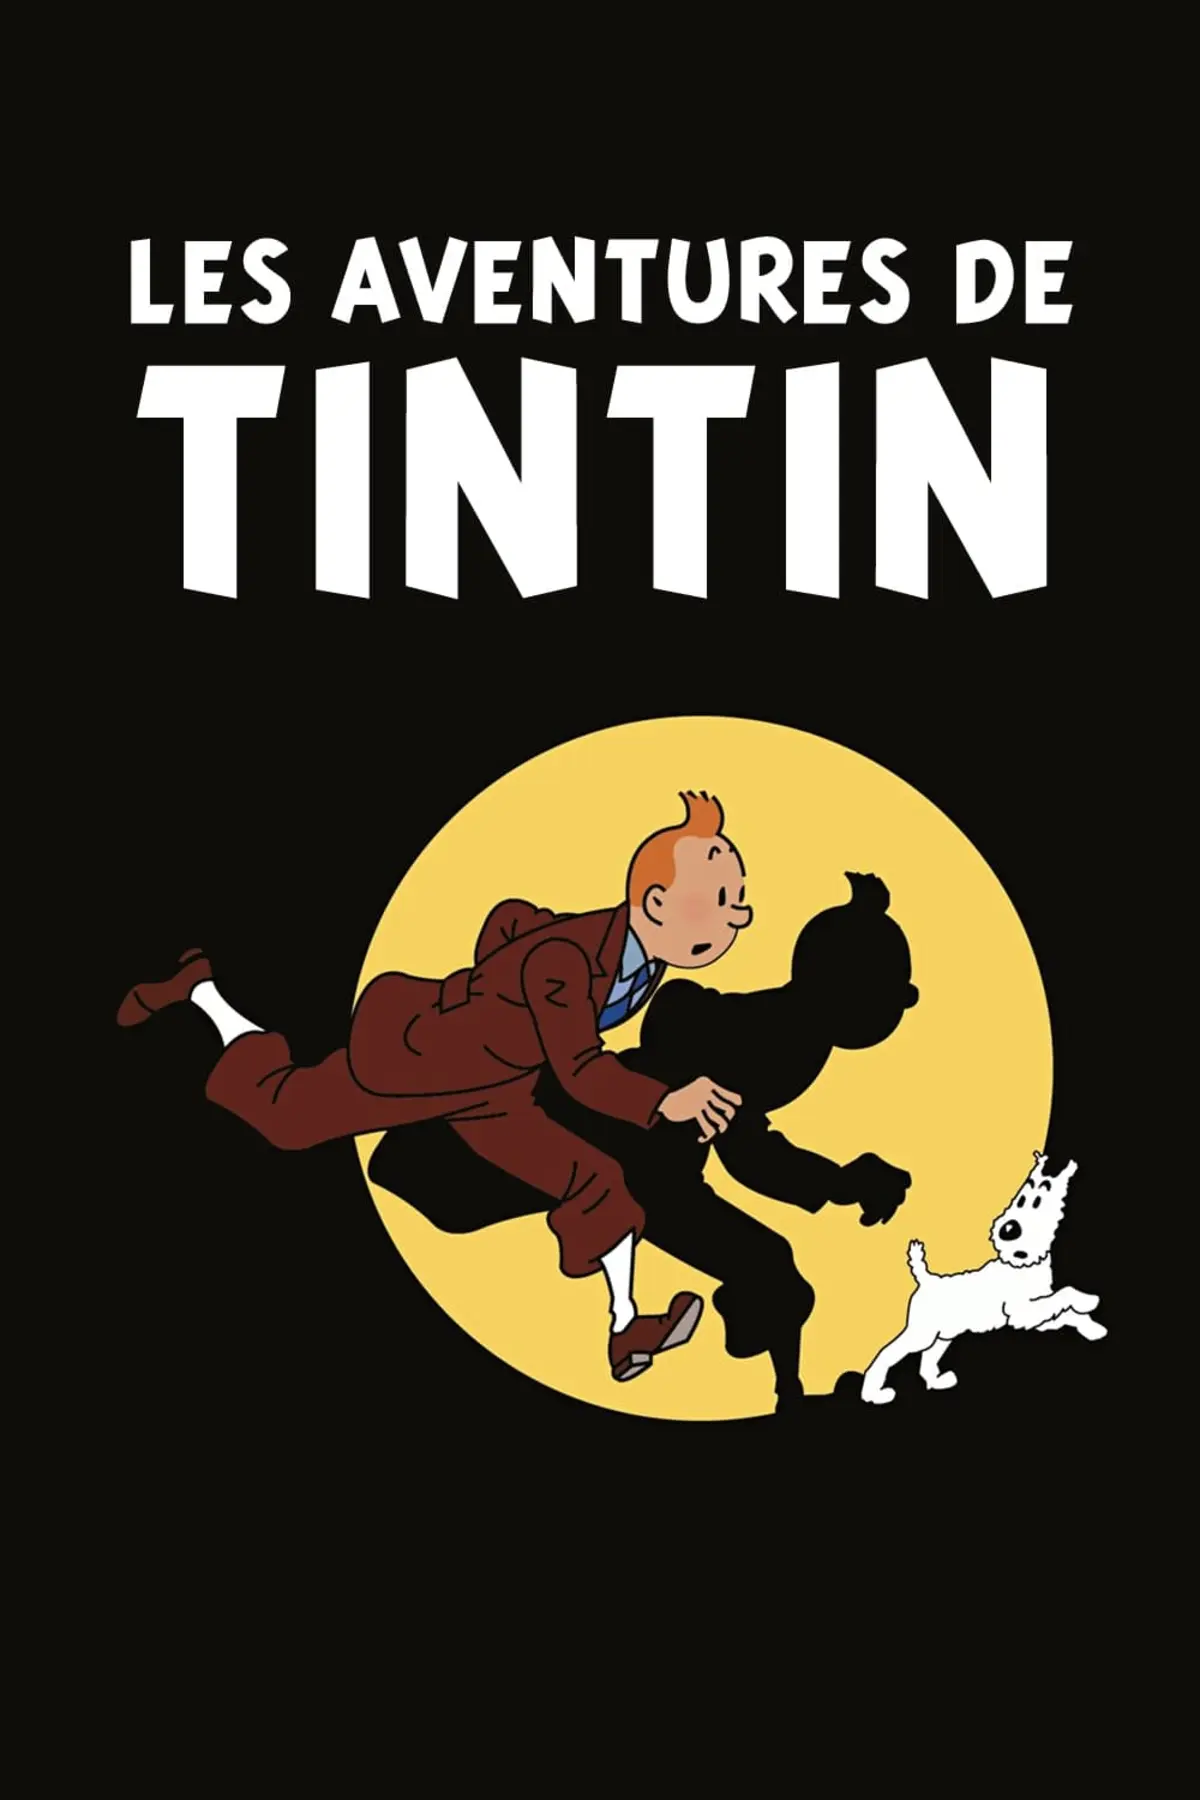 Les Aventures de Tintin S03E01 Coke en stock (1)